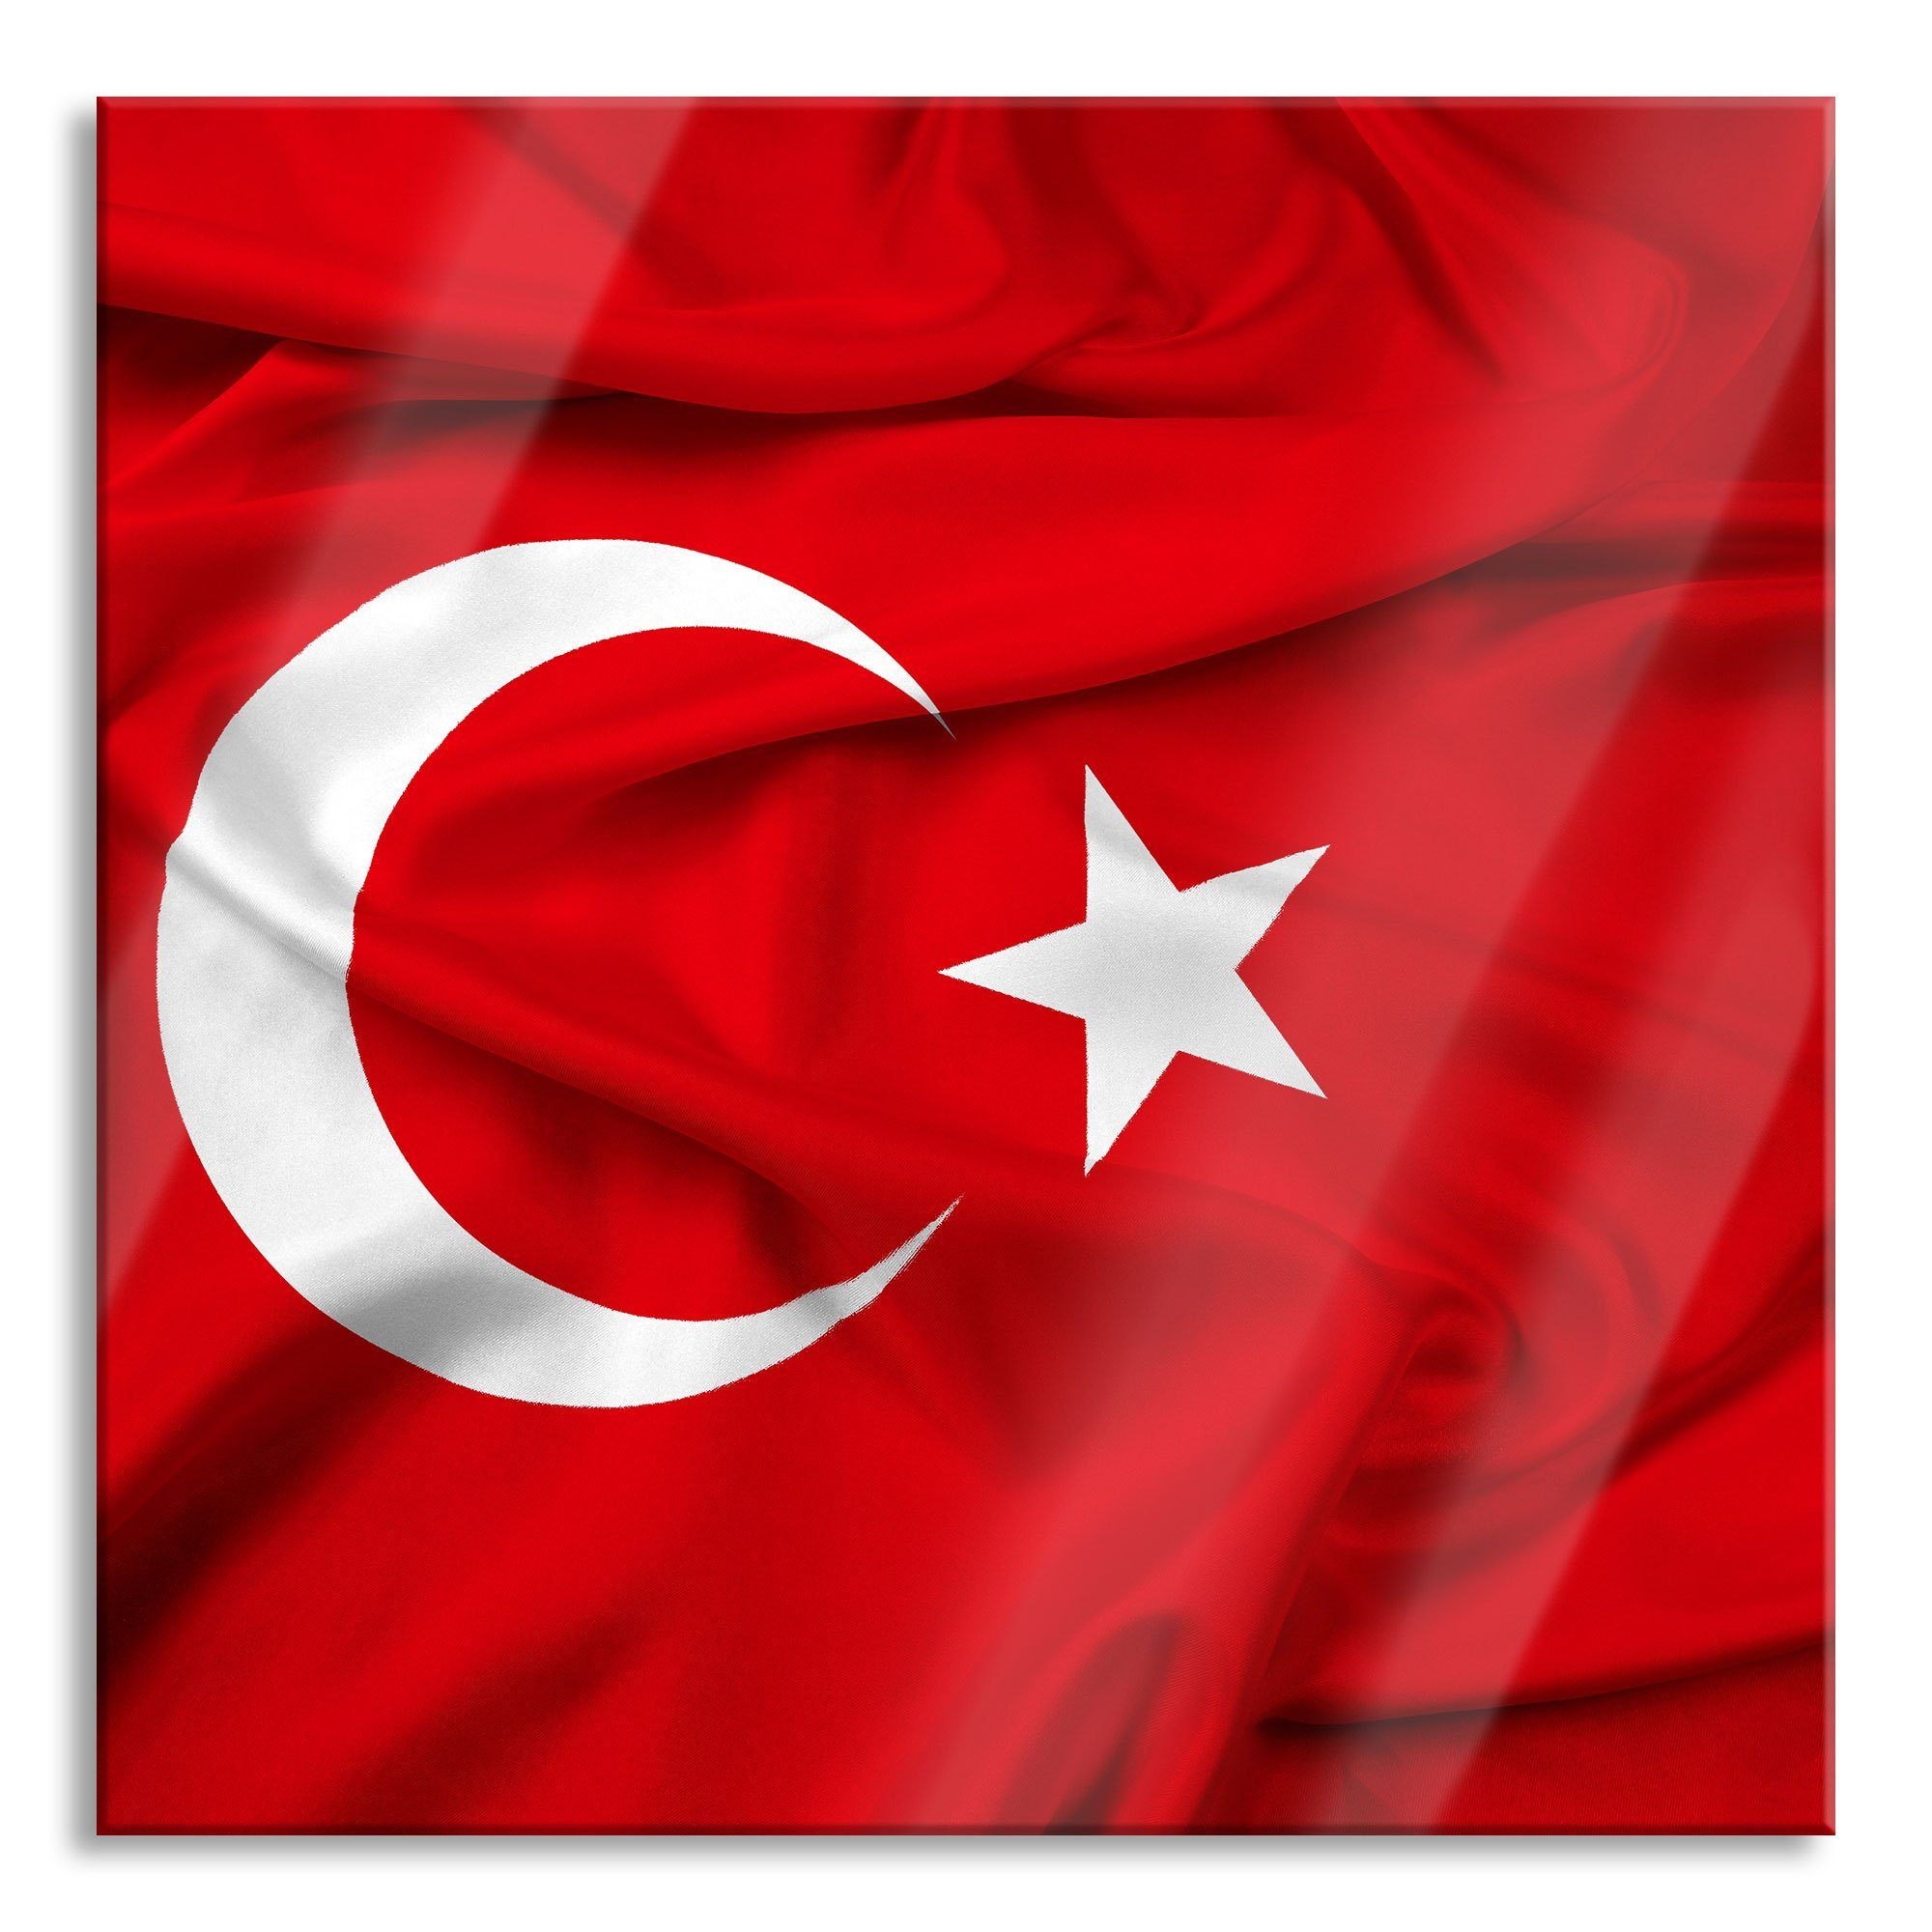 Pixxprint Glasbild Turkey flag Türkei Flagge, Turkey flag Türkei Flagge (1 St), Glasbild aus Echtglas, inkl. Aufhängungen und Abstandshalter